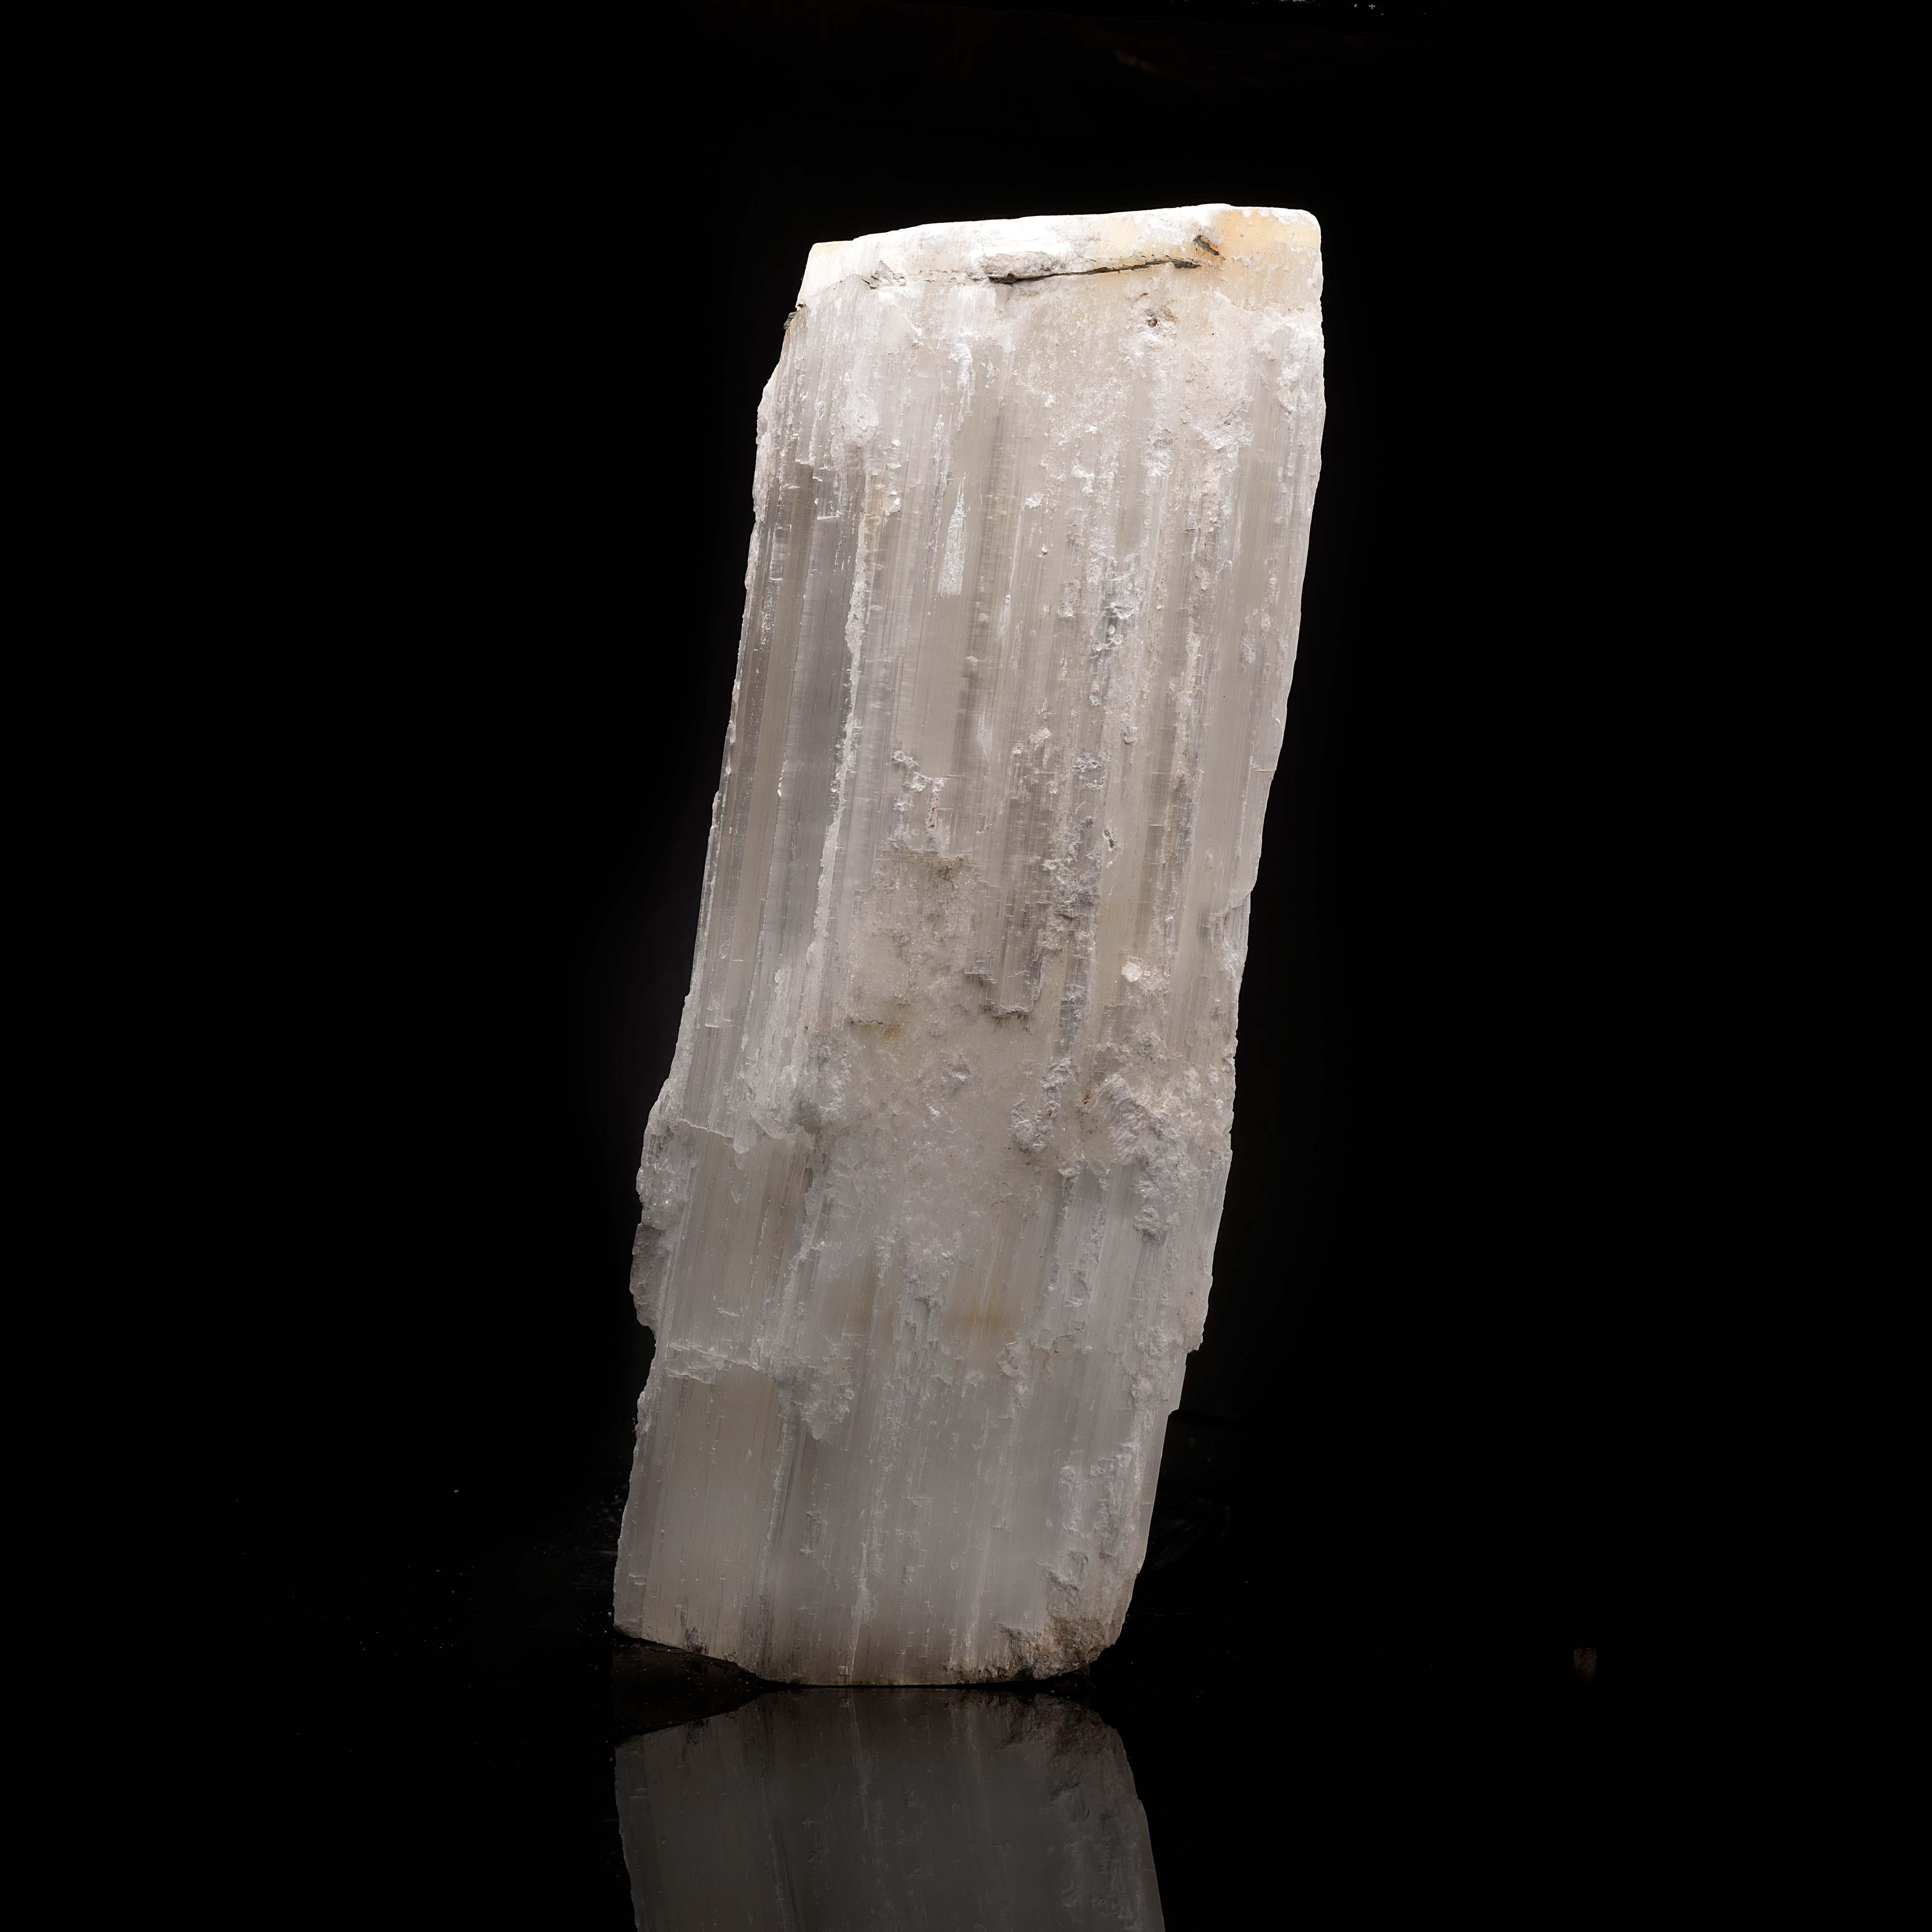 Dieser riesige Selenit-Einkristall ist fast eineinhalb Meter hoch und hat ein wunderschönes, grob gestreiftes Aussehen, wie aus dem Nichts. Es handelt sich um ein bedeutendes Stück, das jeder Sammlung oder jedem Raum Charakter und Einzigartigkeit